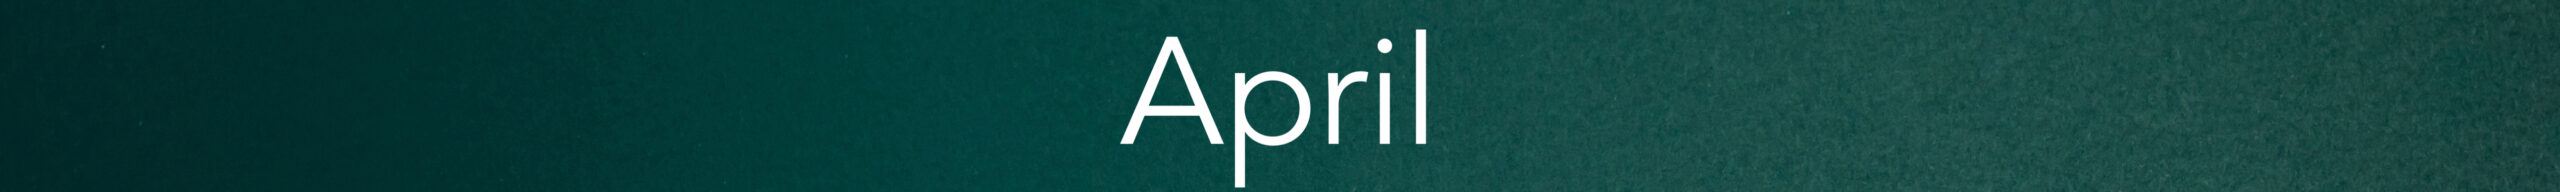 April banner